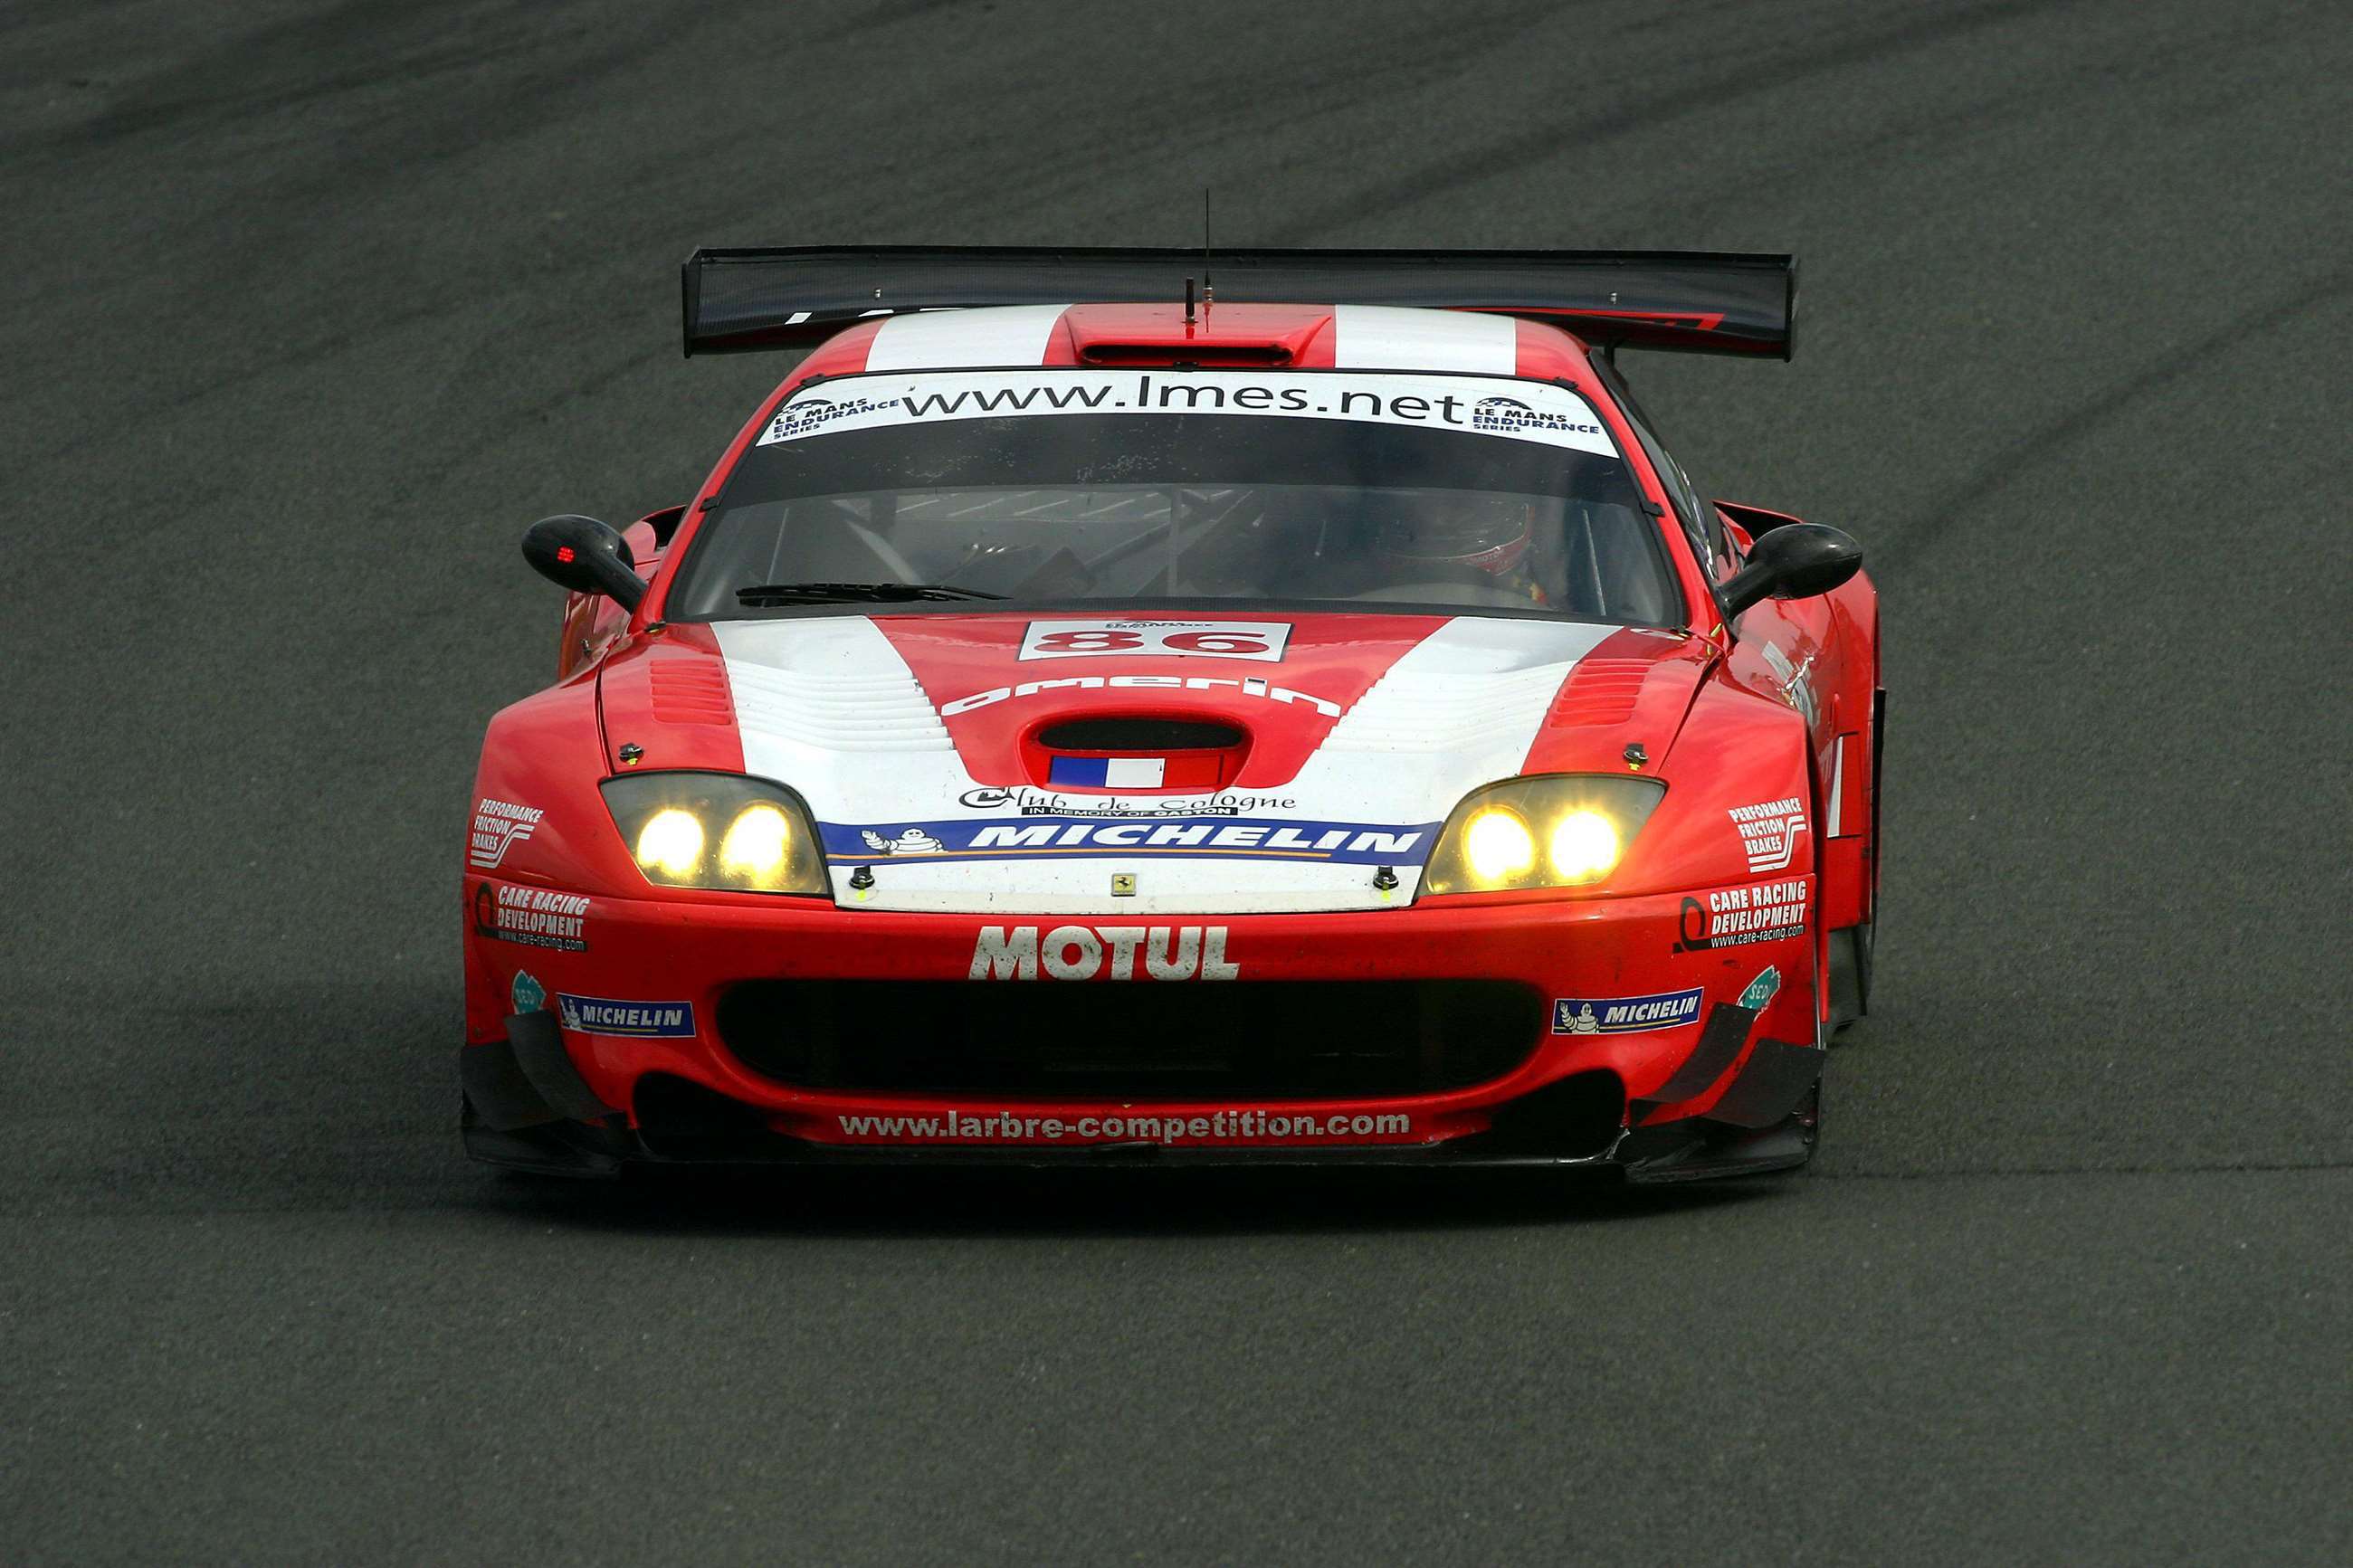 most-beautiful-ferrari-racing-cars-08.jpg